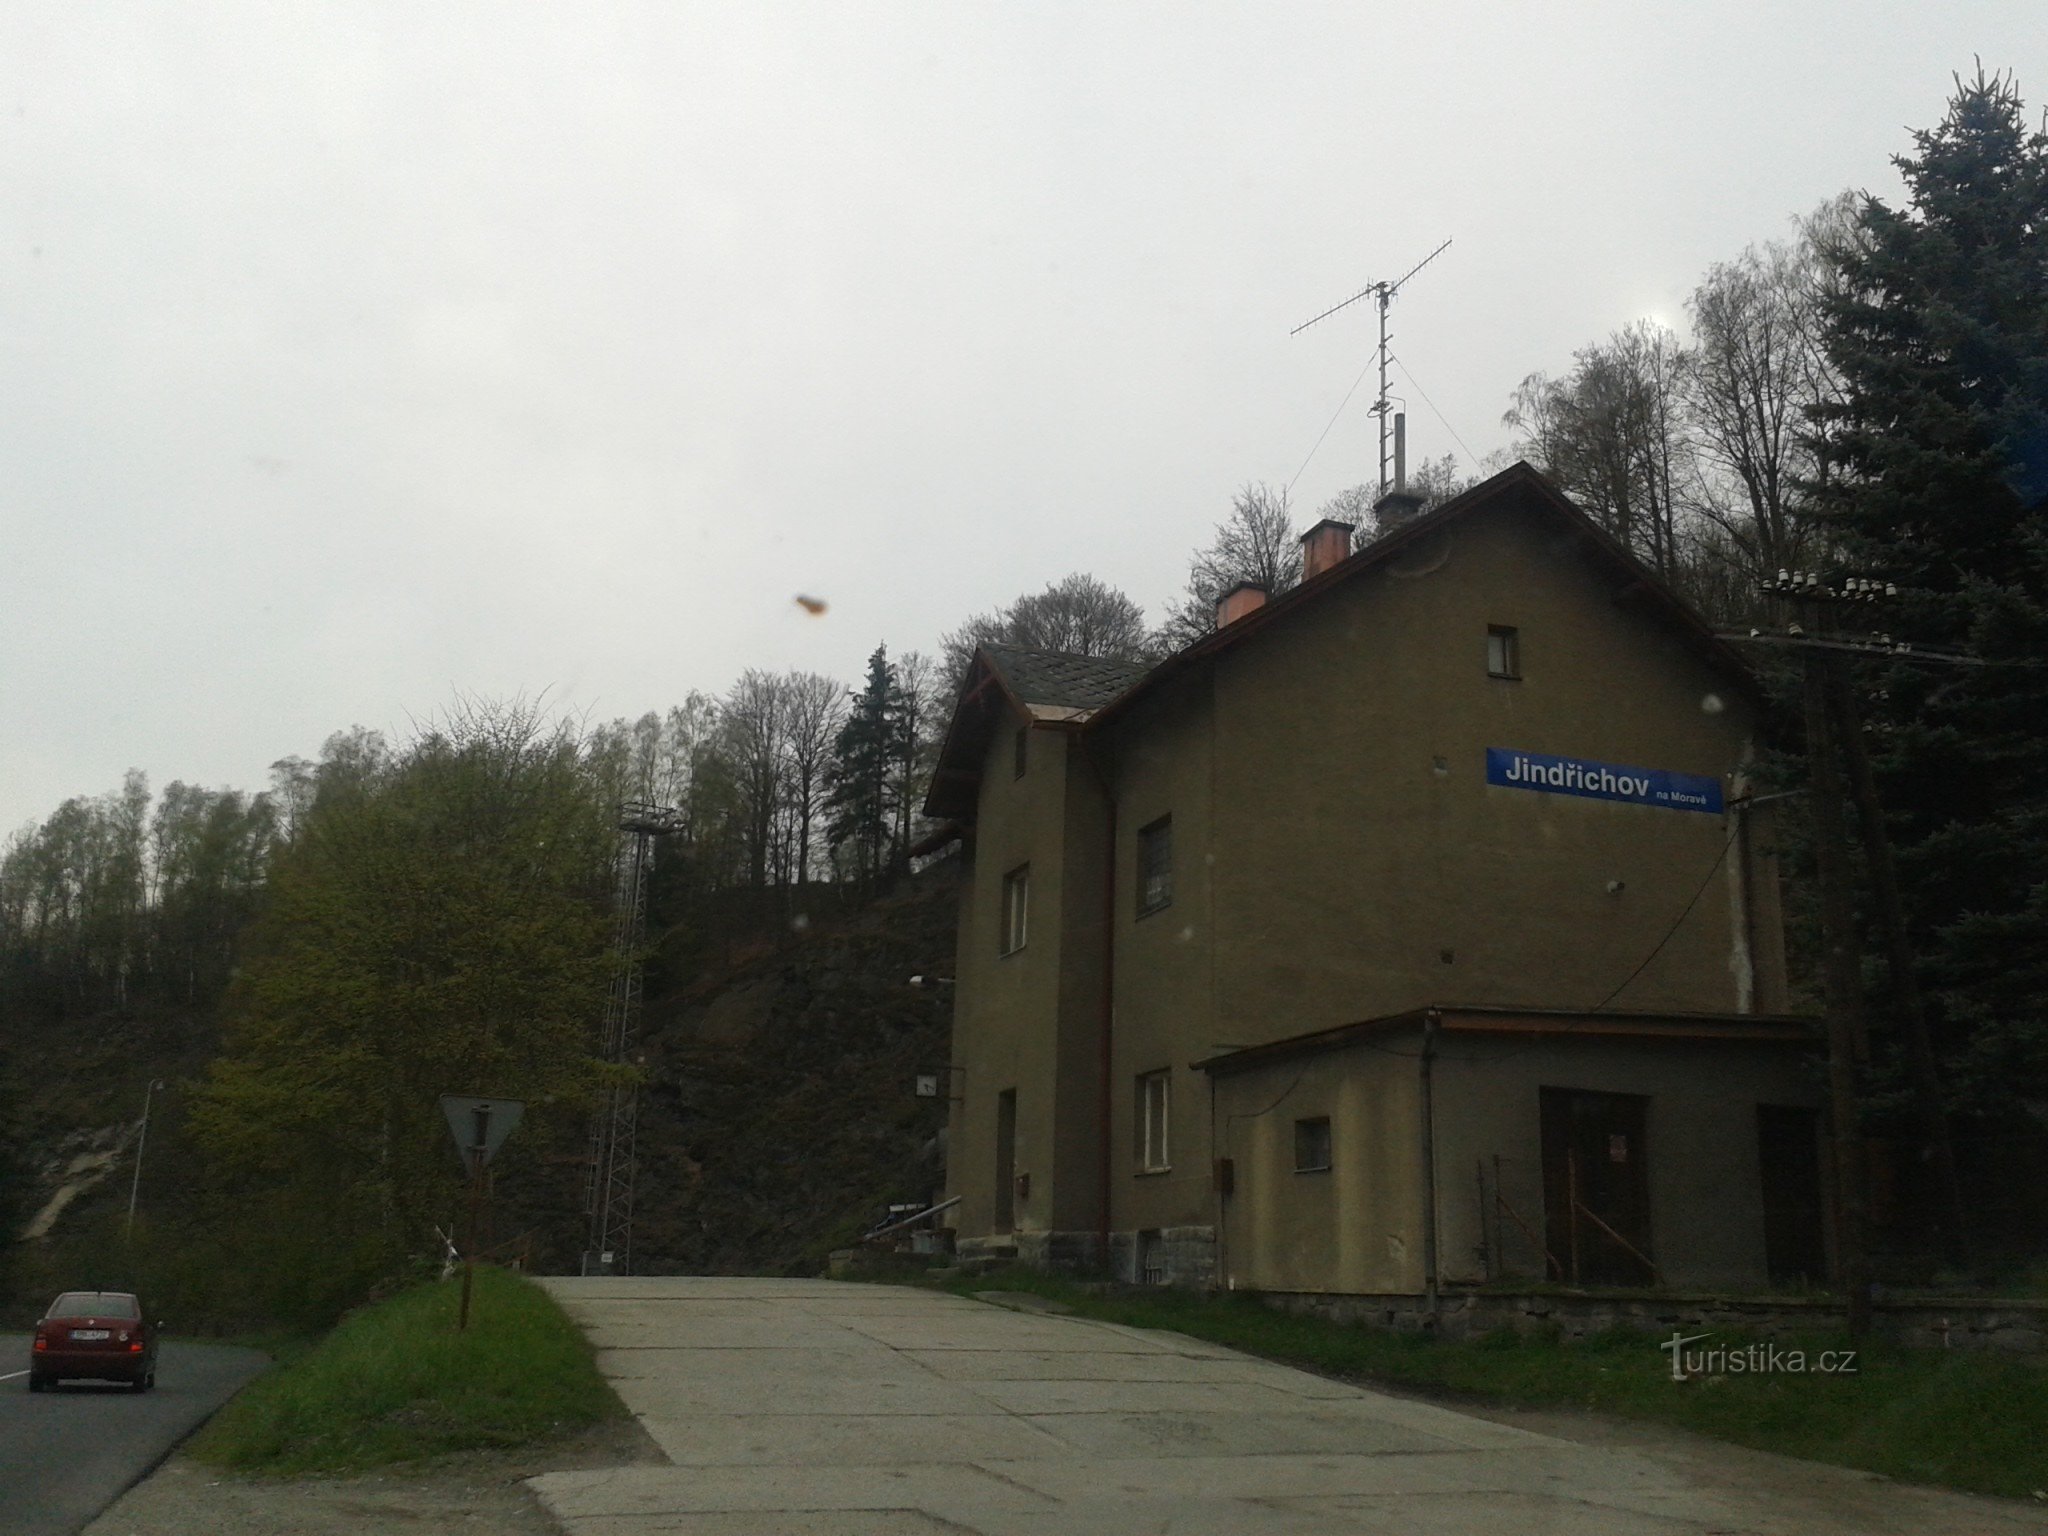 Jindřichov στη Μοραβία - πρώην χαρτοποιείο και σιδηροδρομικός σταθμός όπου ο χρόνος σταμάτησε, περιοχή Šumperk